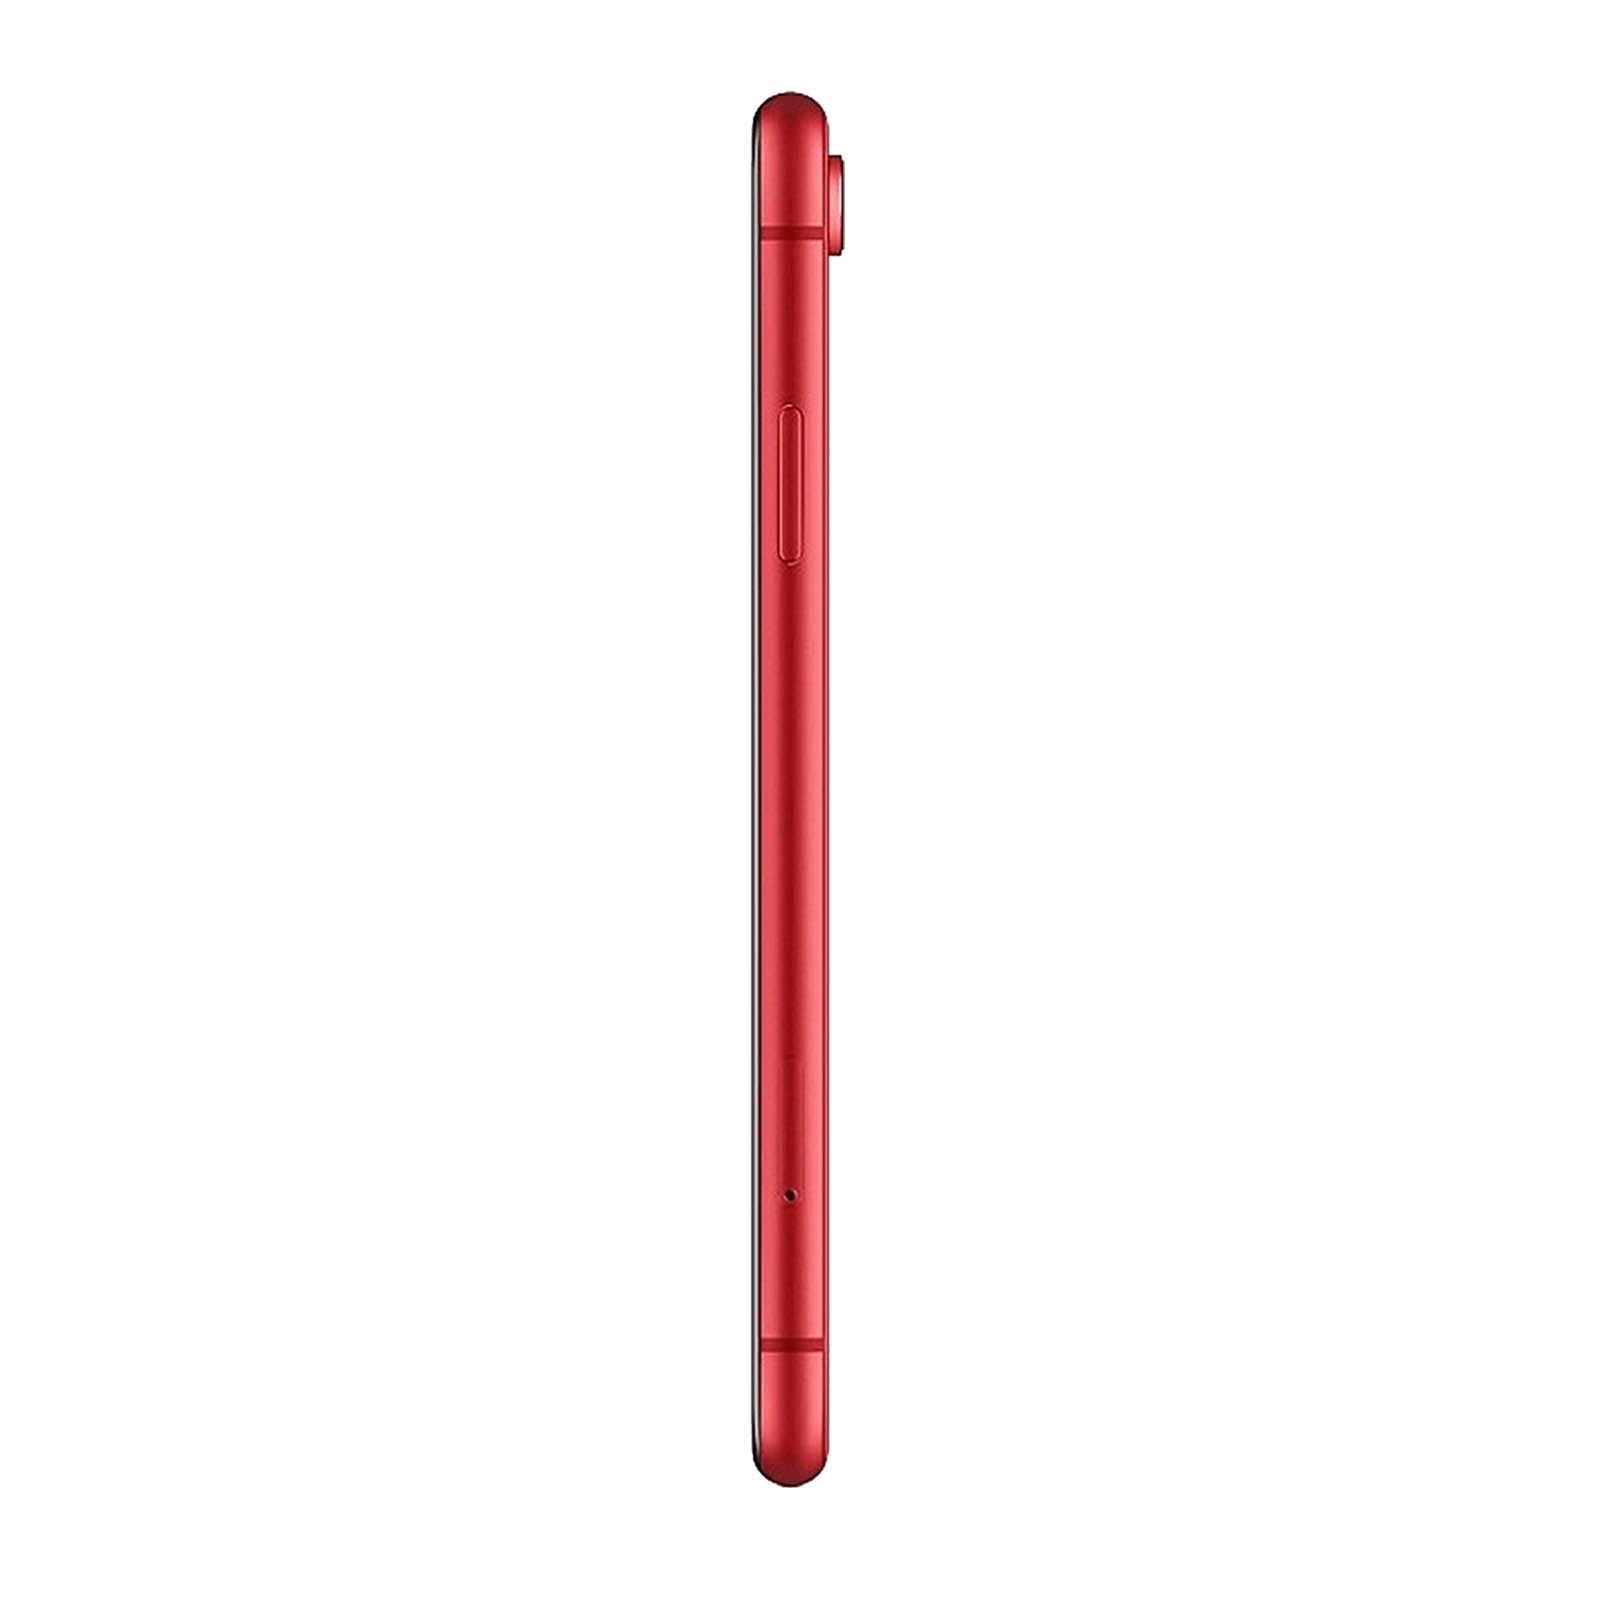 iPhone XR 128 Go - Product Red - Débloqué - Bon état